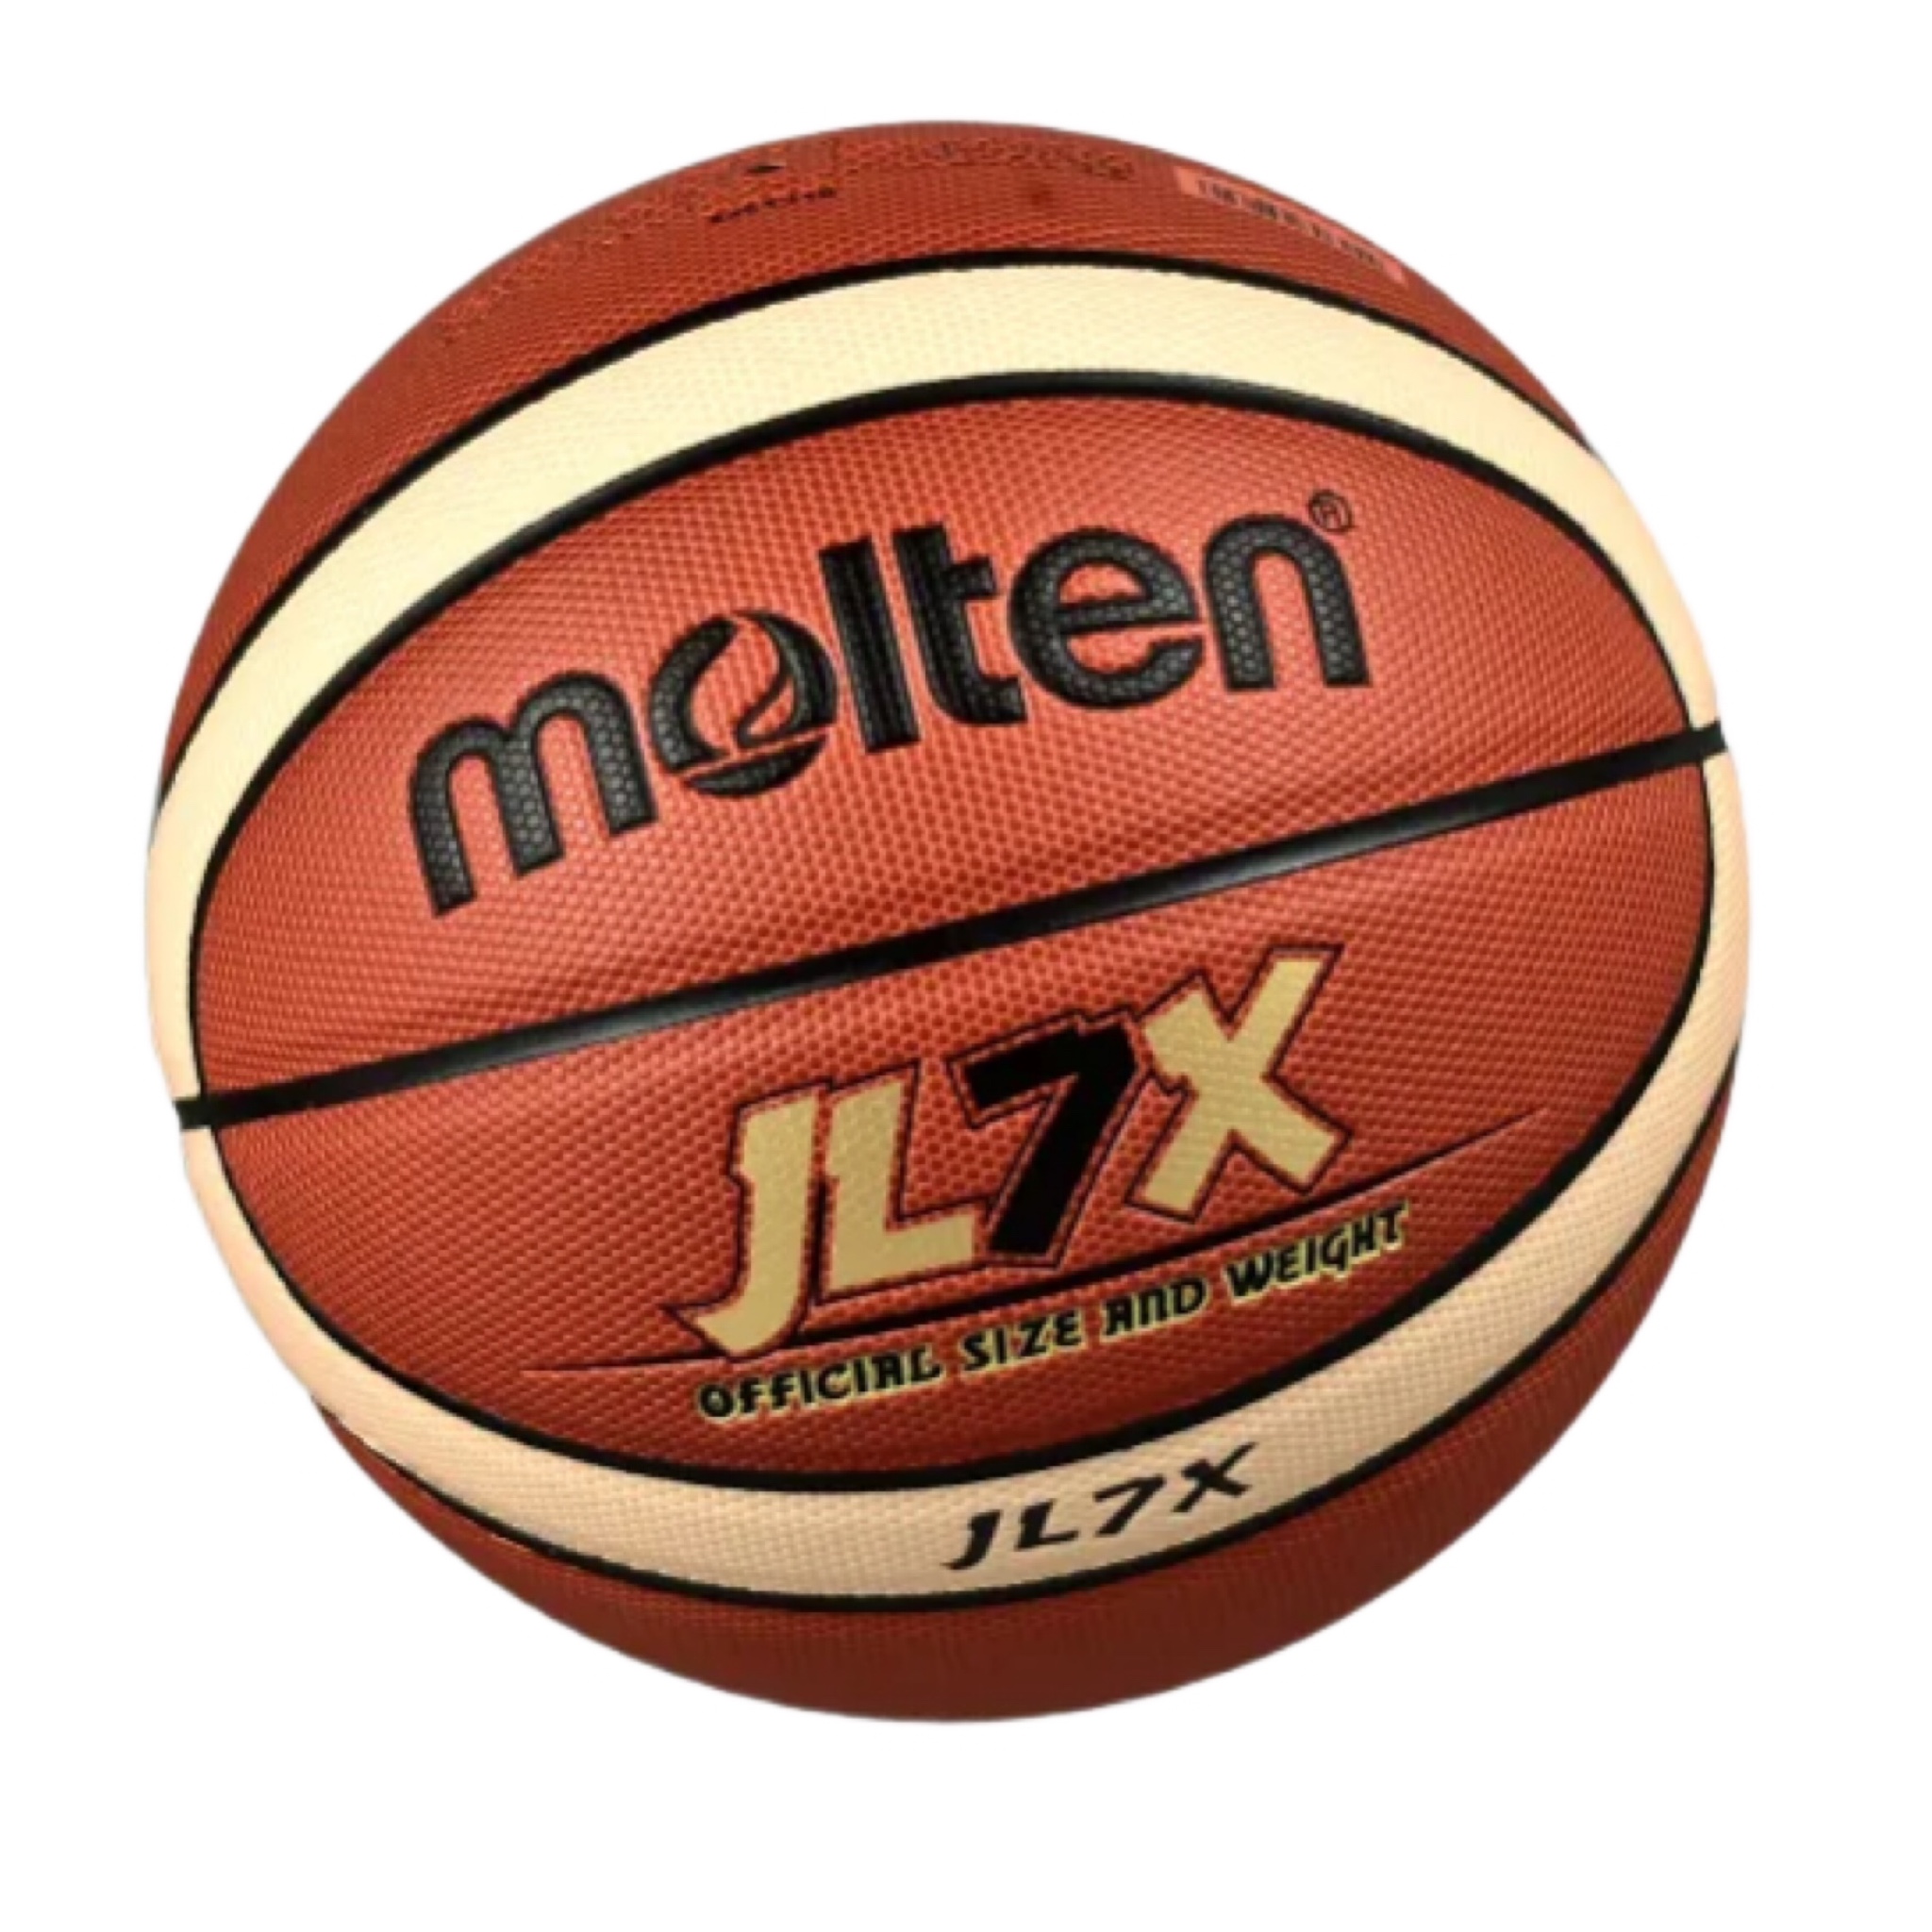 نکته خرید - قیمت روز توپ بسکتبال مولتن مدل Jl7x خرید